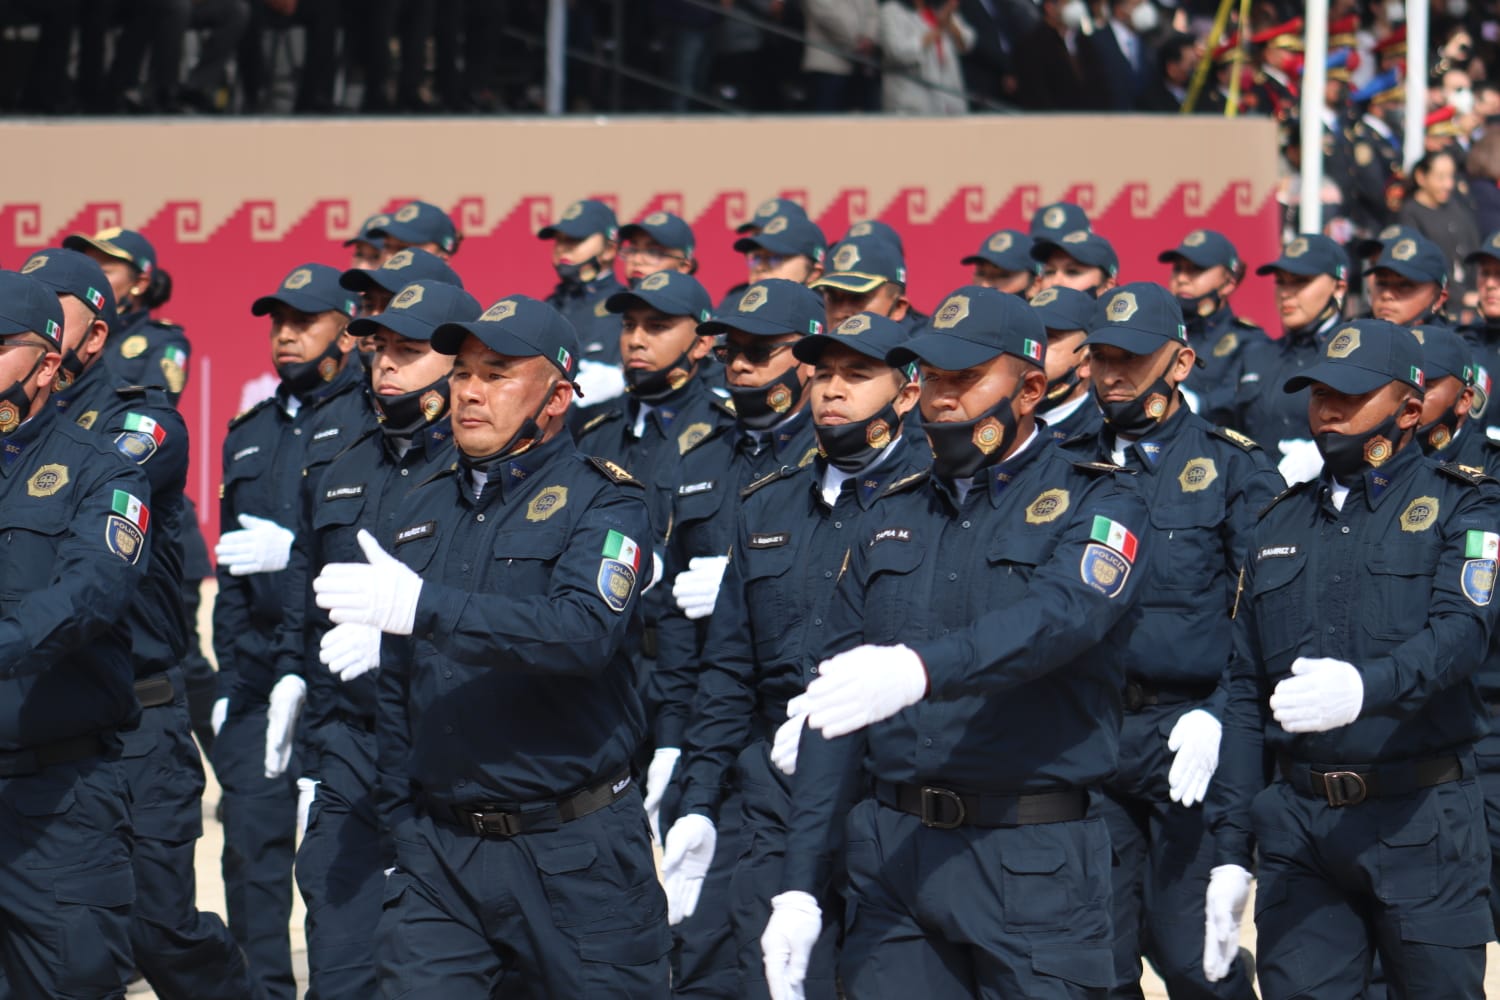 Día del policía: un reconocimiento a quienes hacen bien su labor